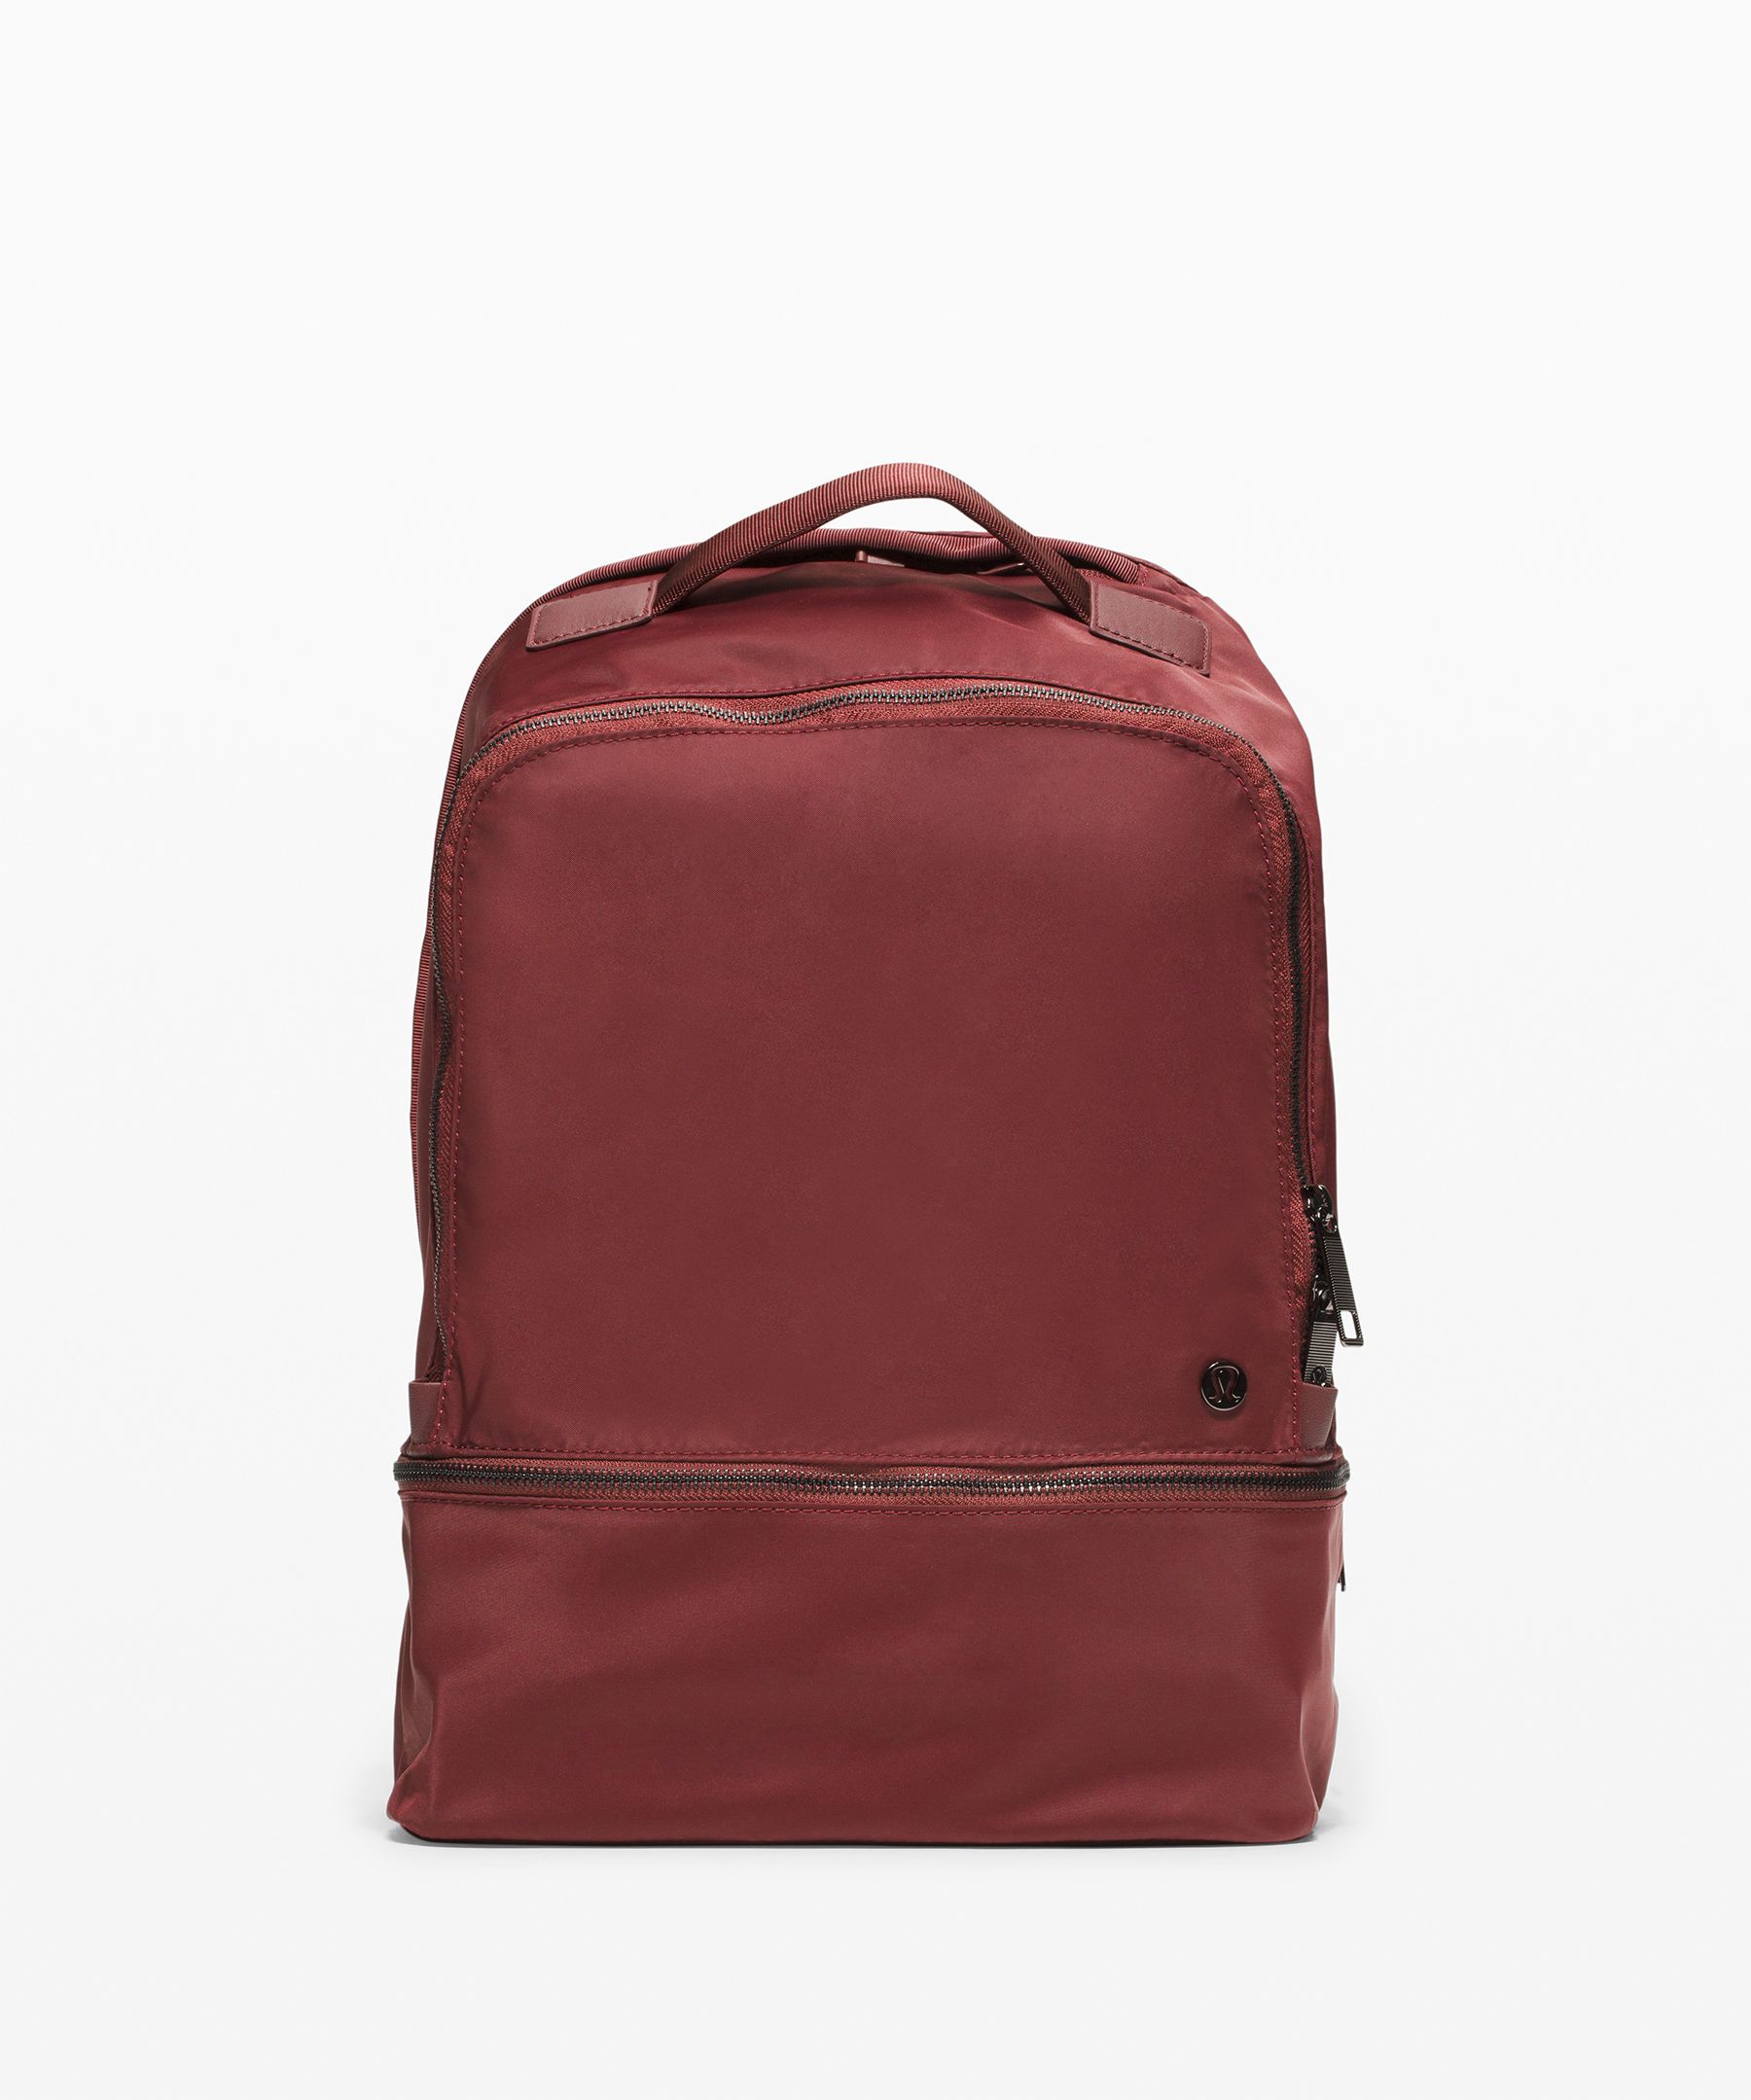 city adventurer backpack